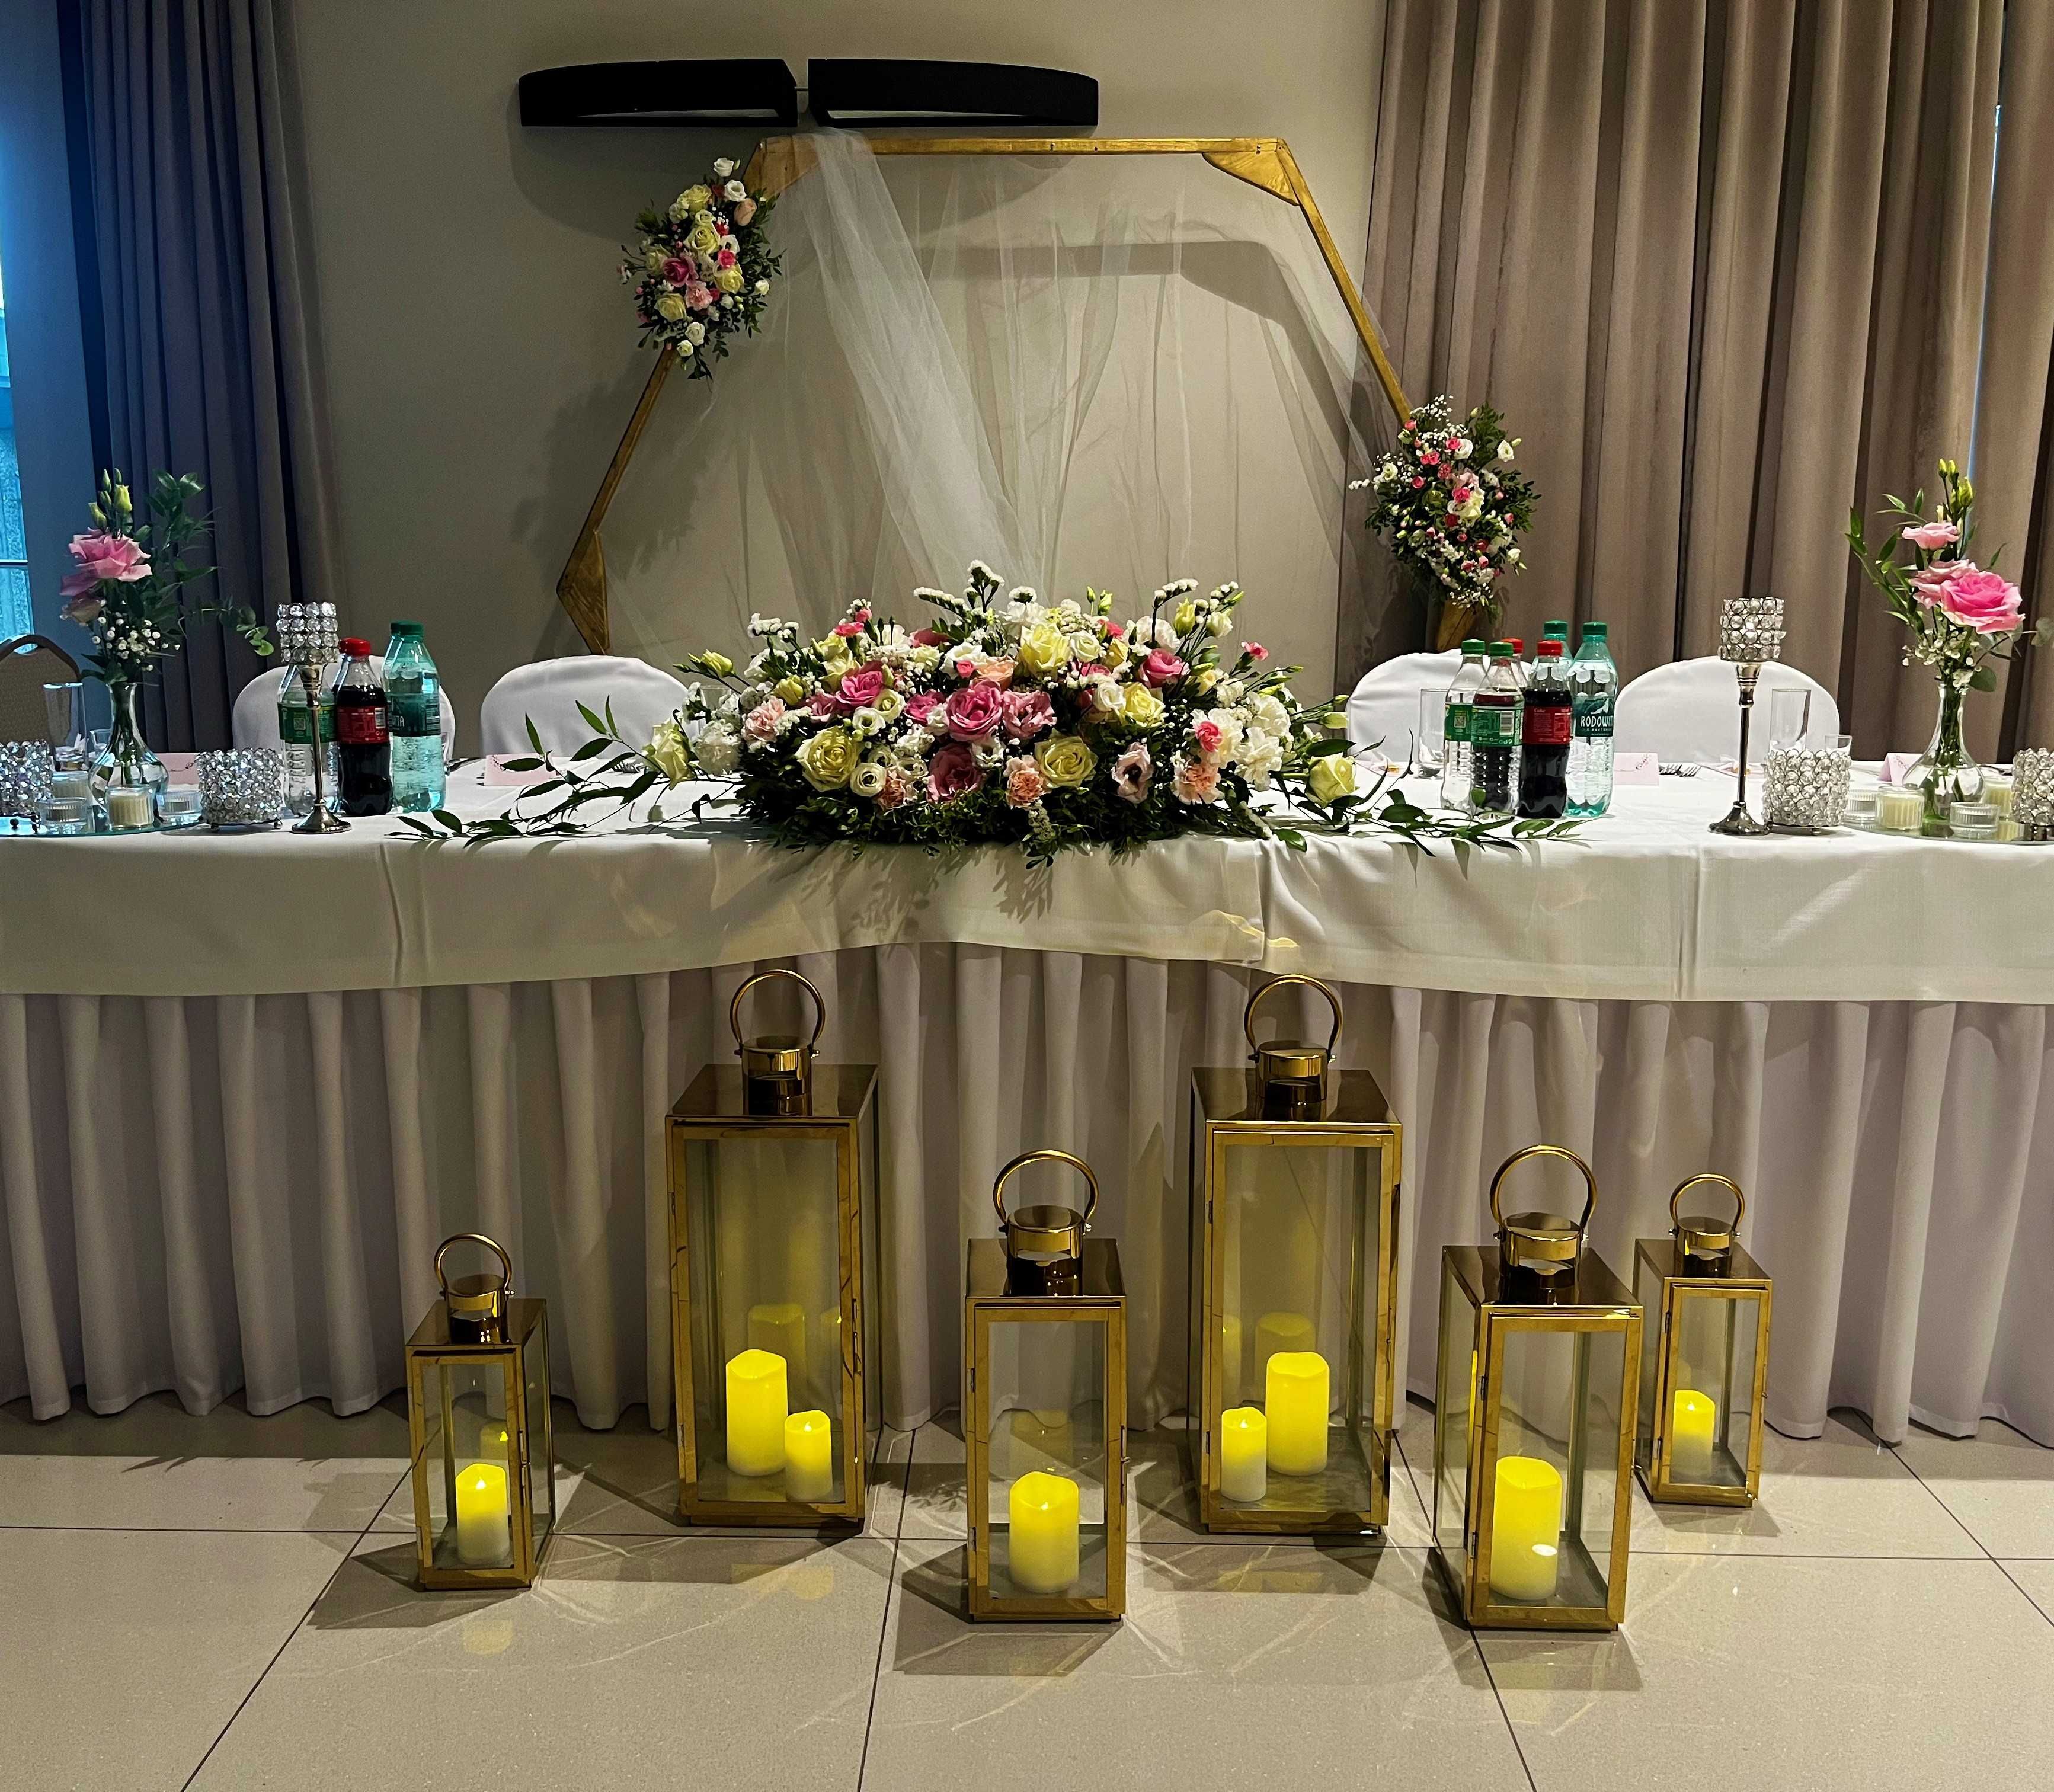 Dekoratorka ślubna florystka kwiaty dekoracje ślubne cena od 800zł